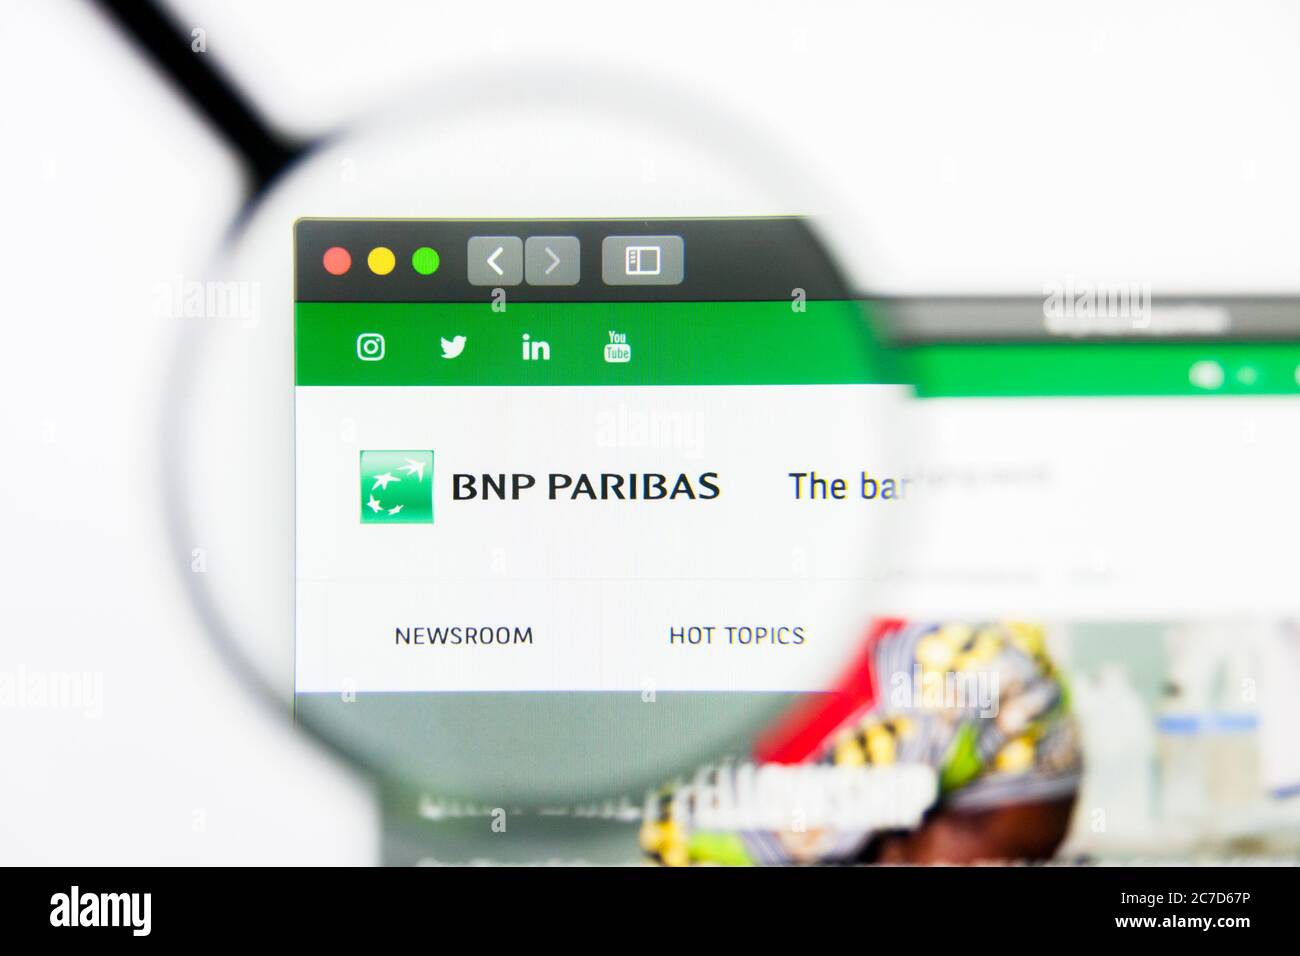 Los Angeles, California, EE.UU. - 24 de marzo de 2019: Editorial ilustrativa de la página web de BNP Paribas. El logotipo de BNP Paribas se puede ver en la pantalla. Foto de stock